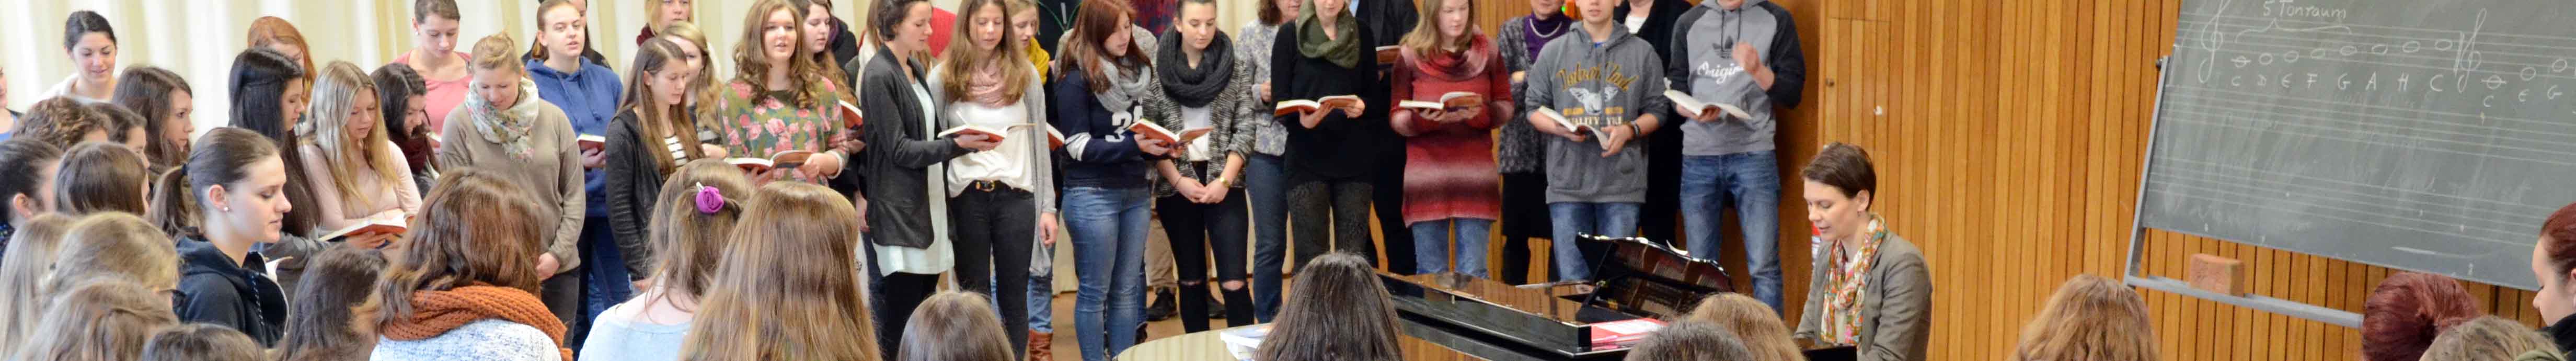 Im Musiksaal trifft sich die gesamte Schülerschaft der Reutlinger Fachschule, um regelmäßig miteinander zu singen und für Aufführungen zu proben.